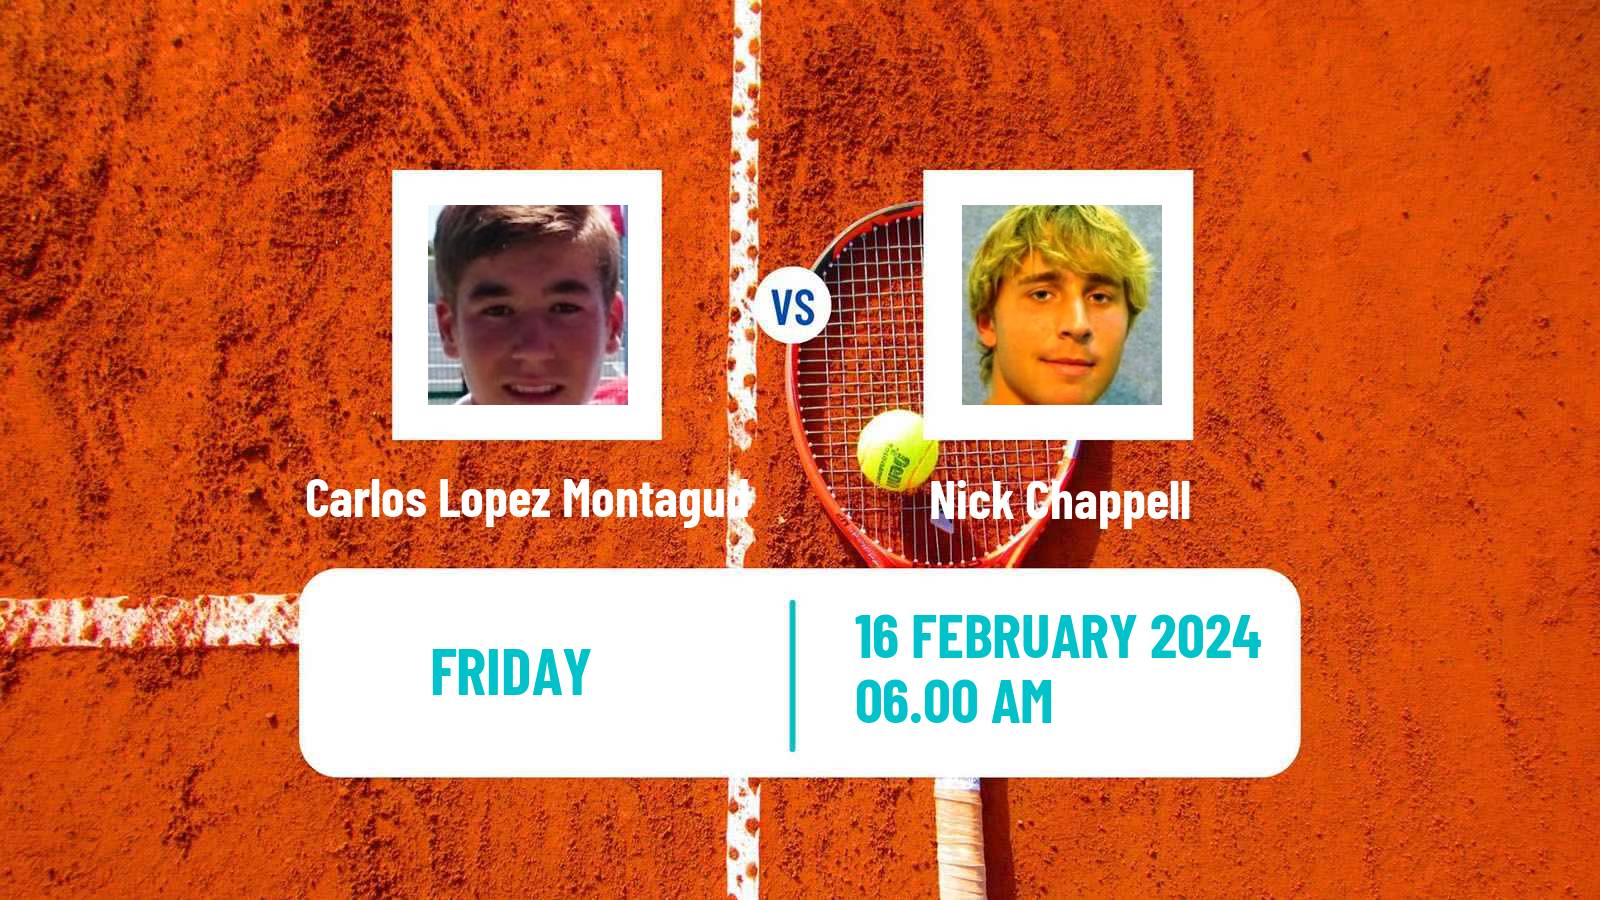 Tennis ITF M25 Vila Real De Santo Antonio Men Carlos Lopez Montagud - Nick Chappell